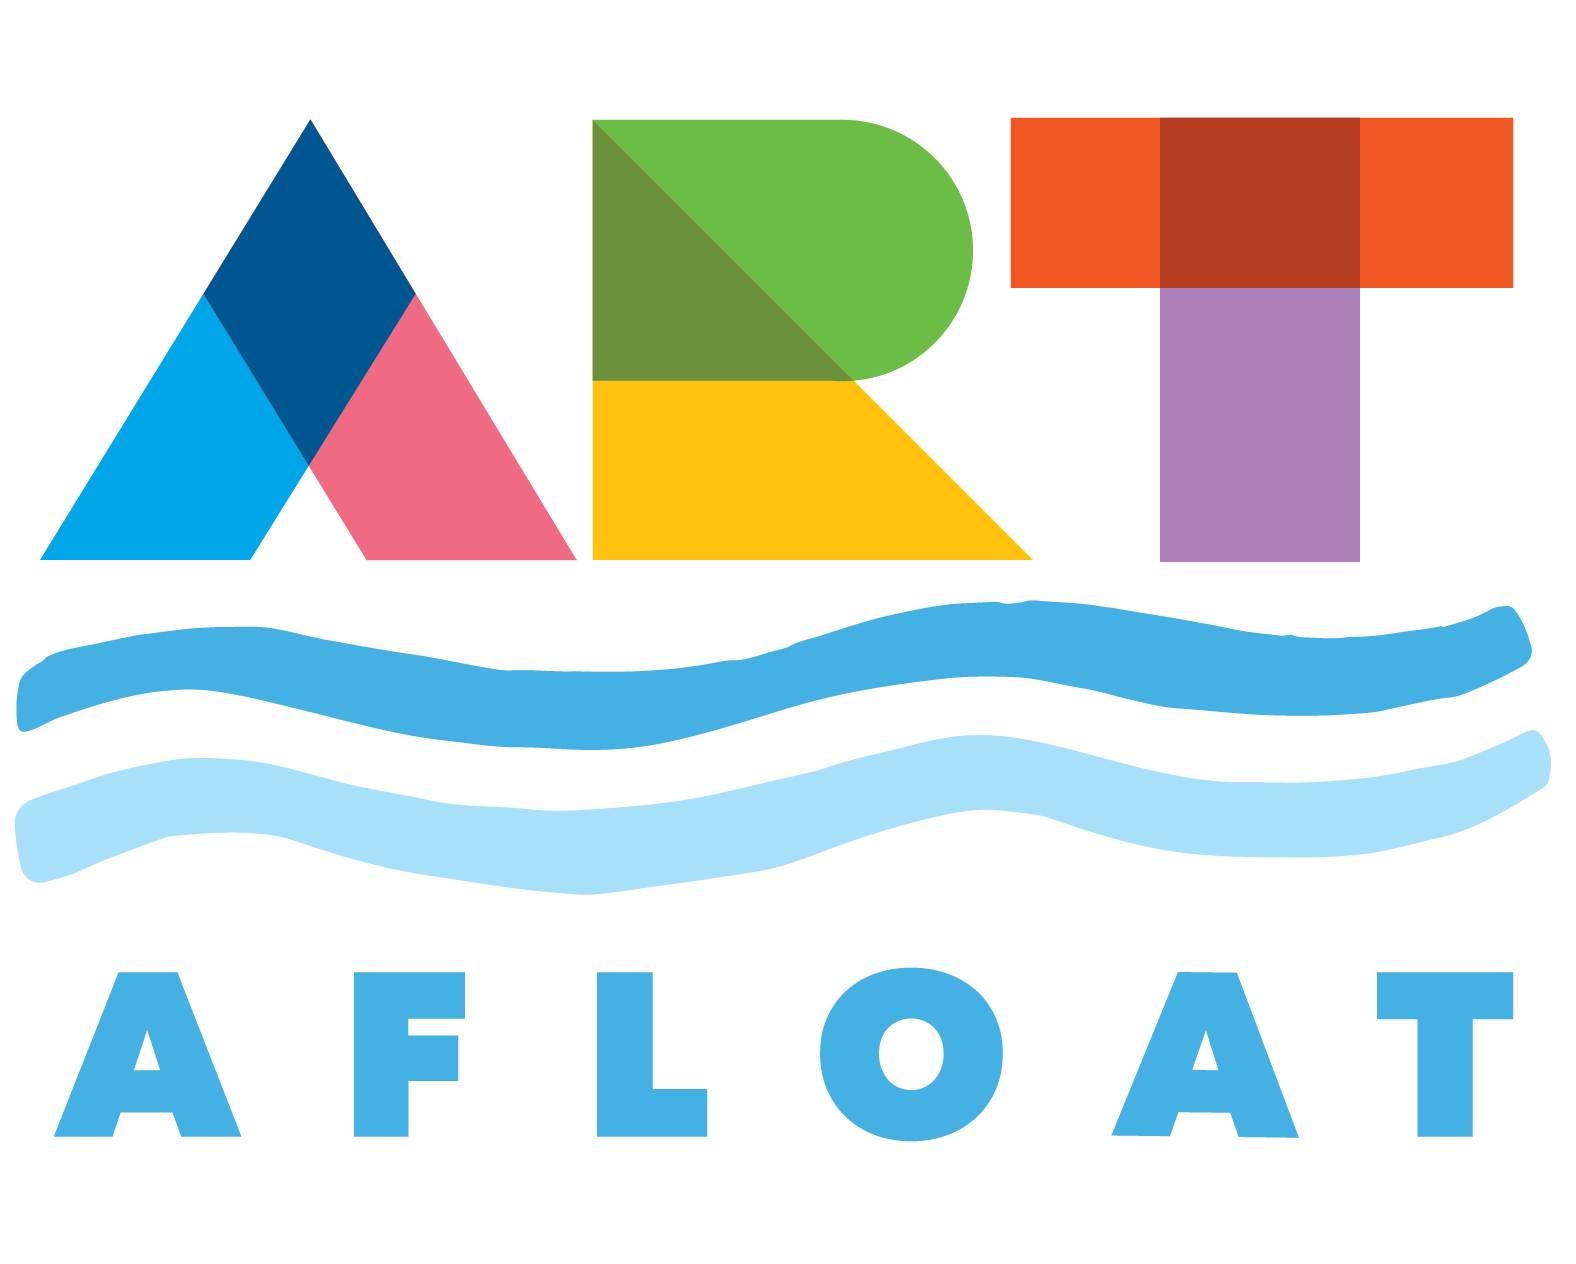 ArtAfloatOKC